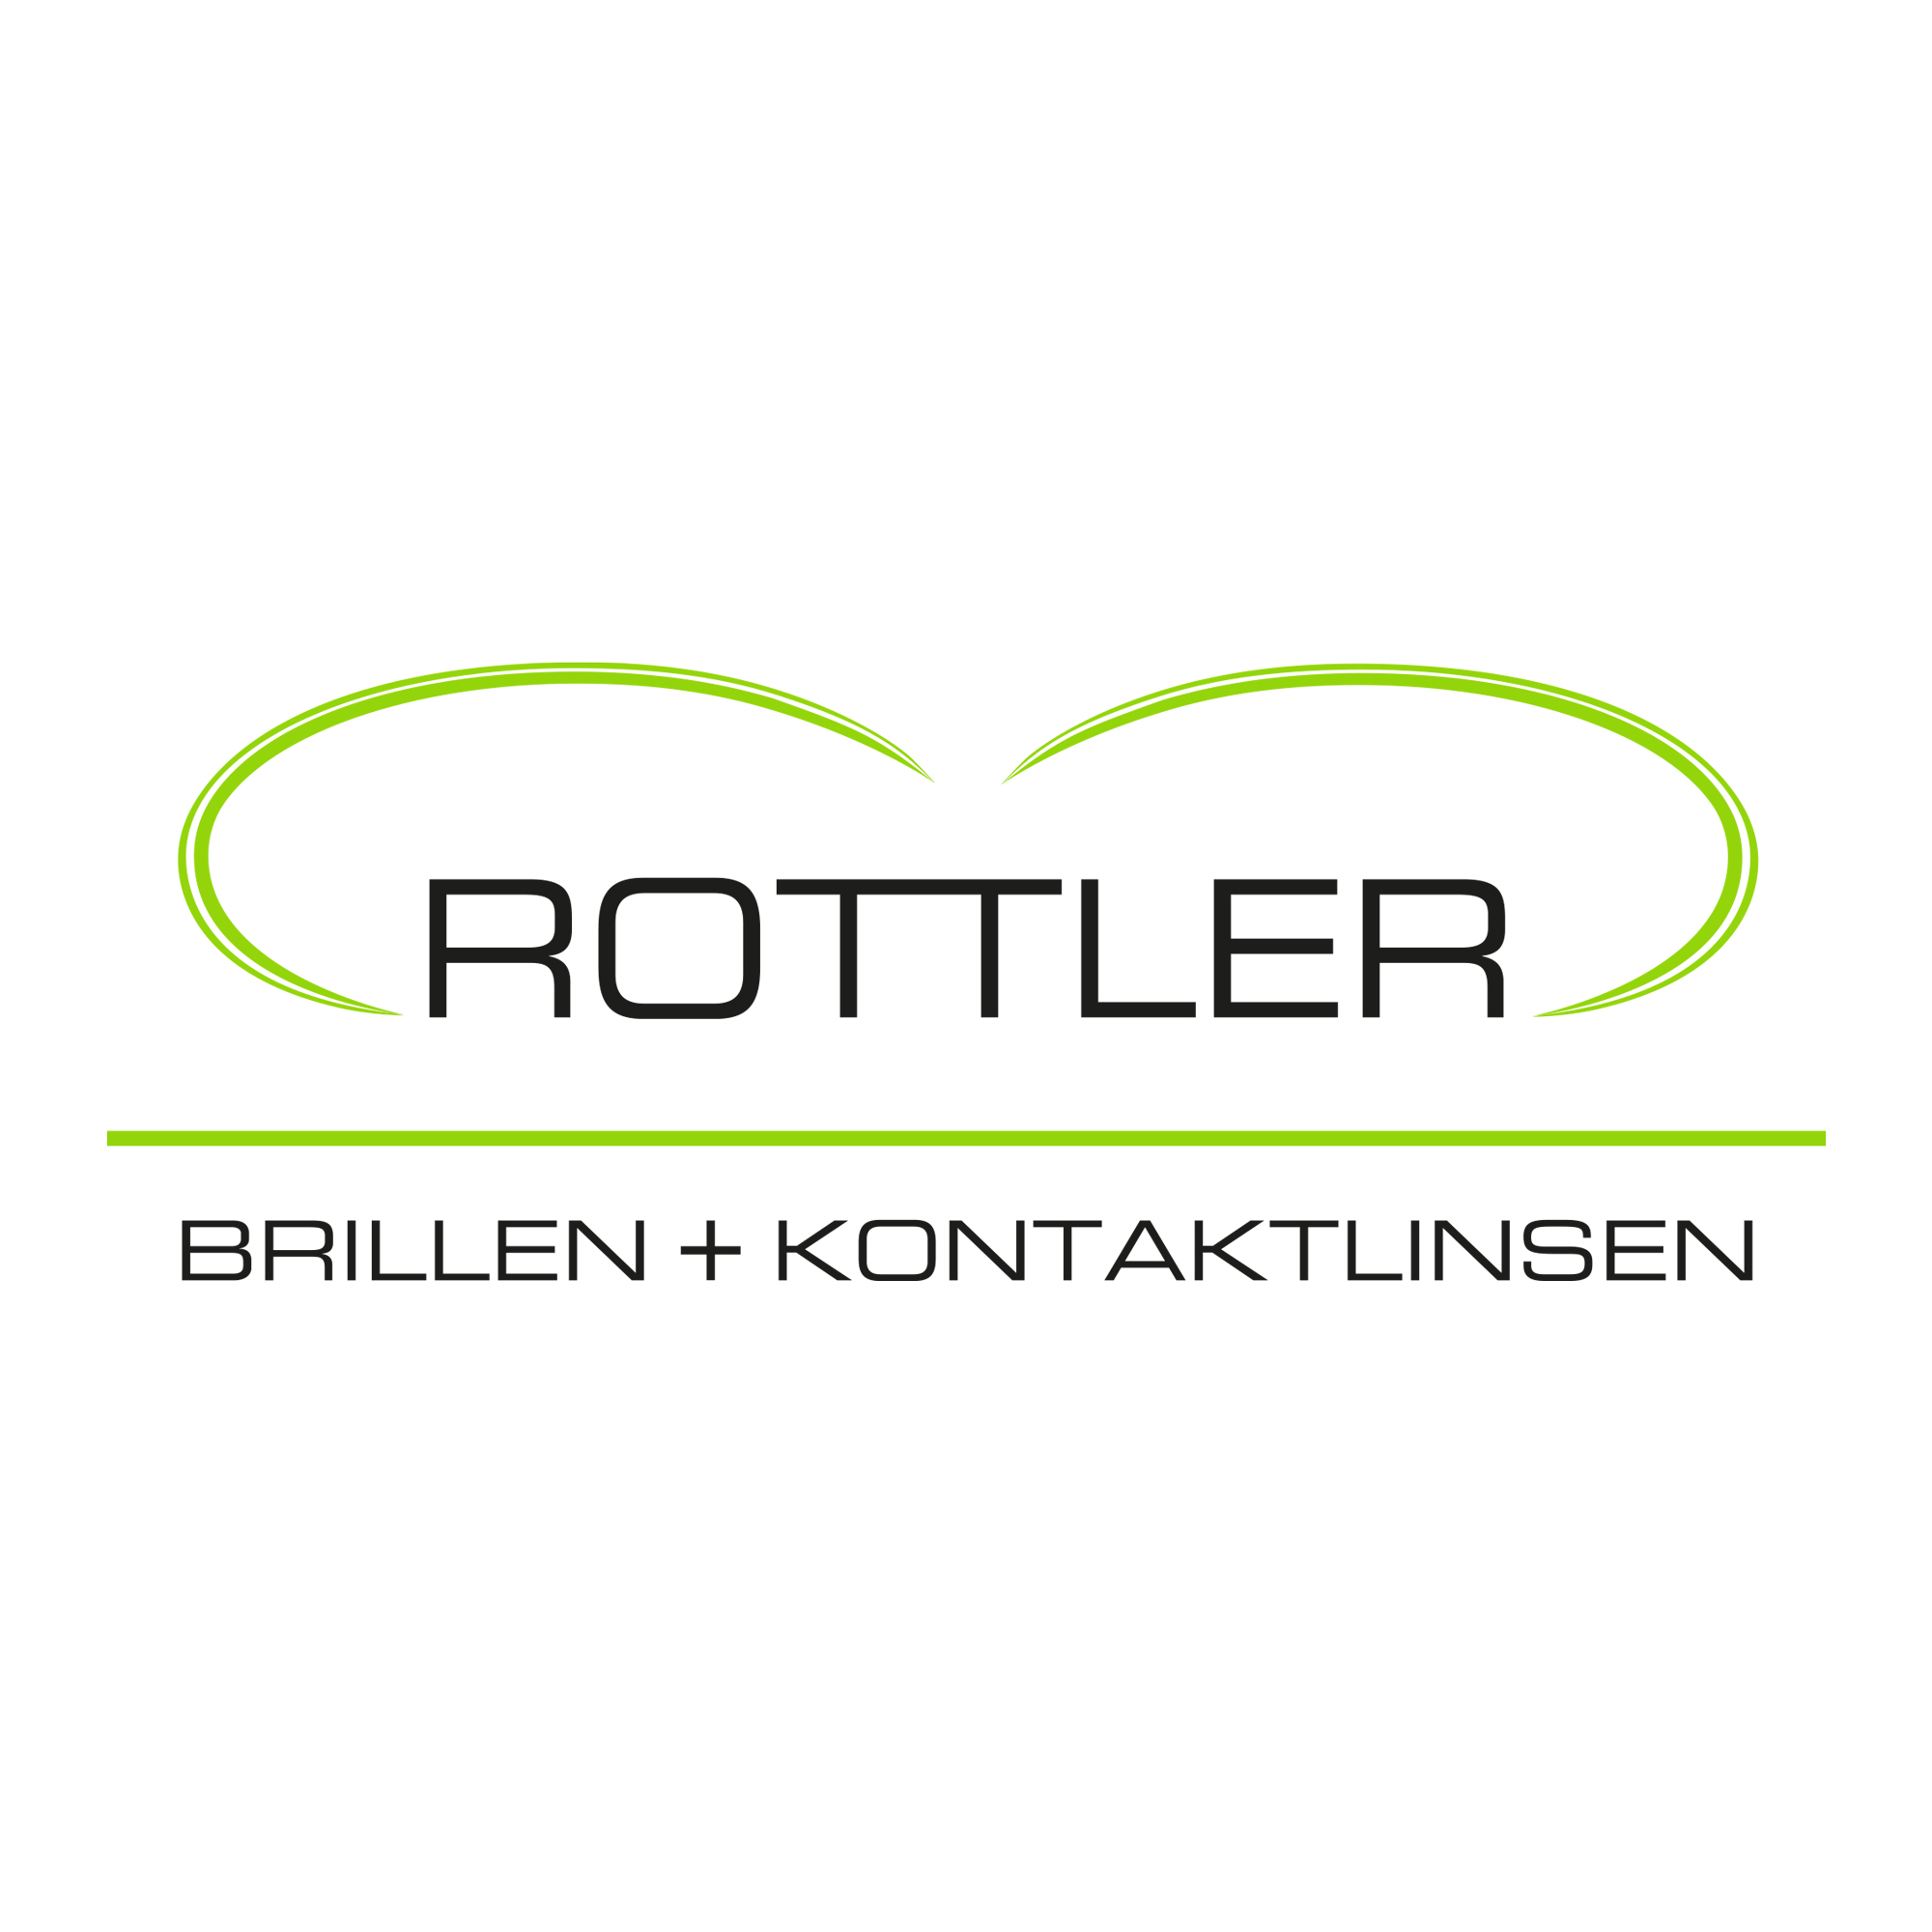 ROTTLER Brillen + Kontaktlinsen in Oberhausen in Oberhausen im Rheinland - Logo